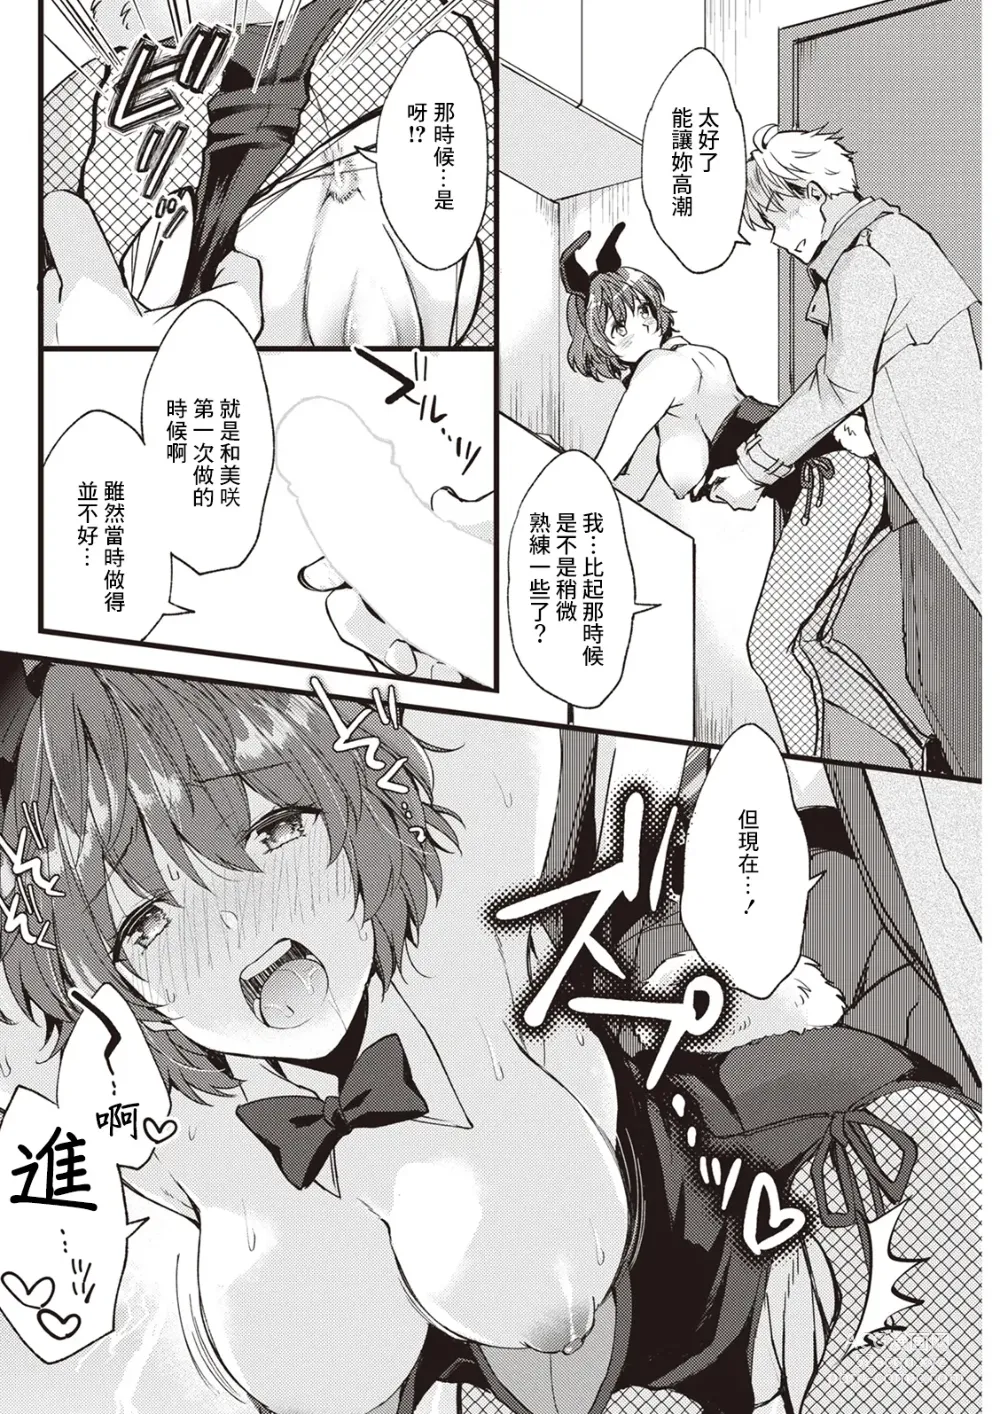 Page 8 of manga Koi wa Just in me